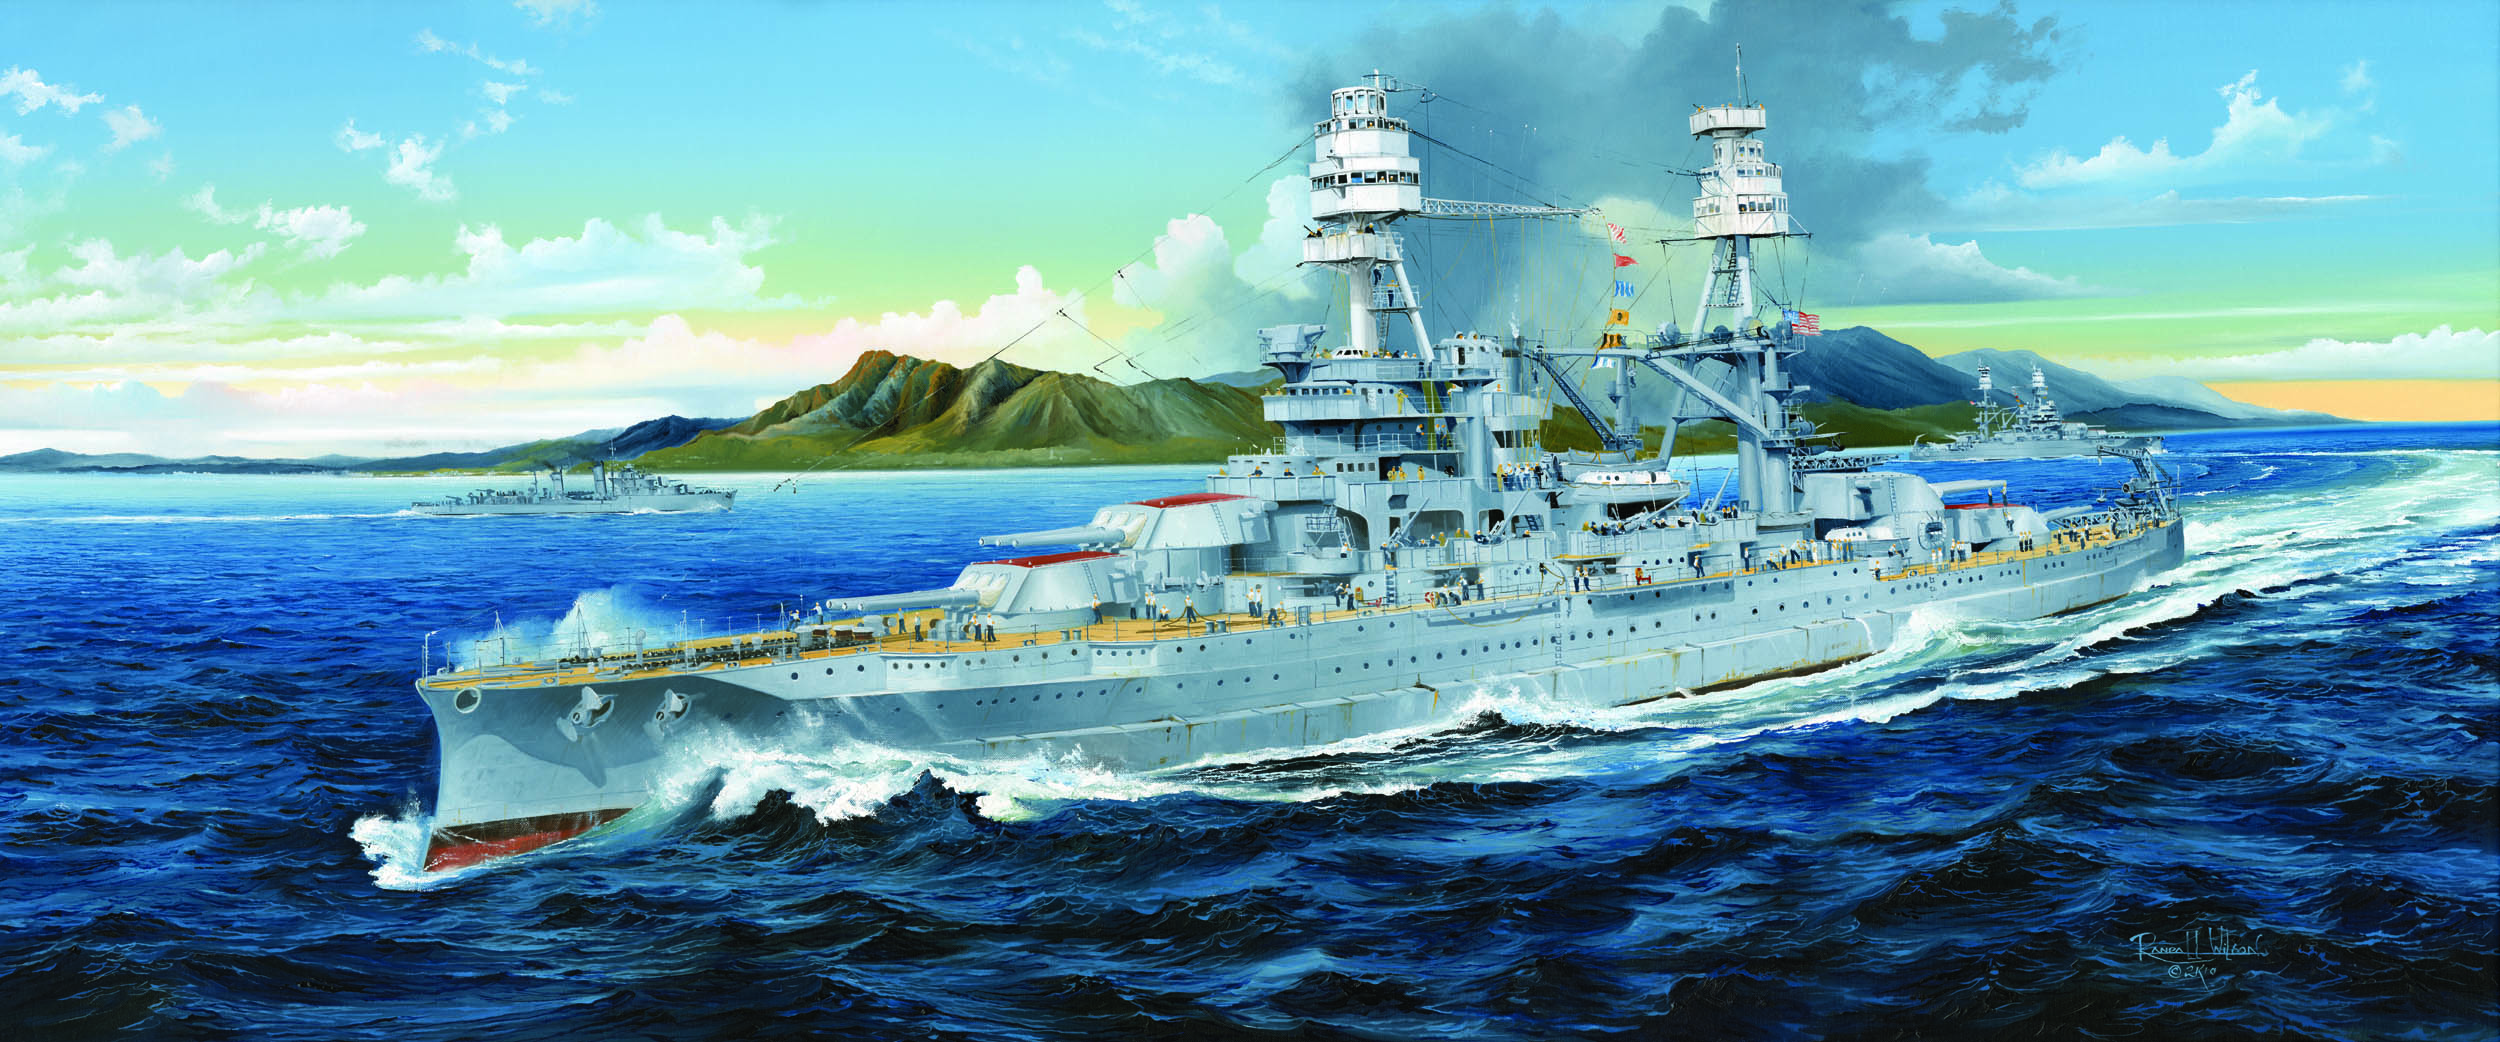 美国"亚利桑纳"号战列舰 BB-39 1941年   03701